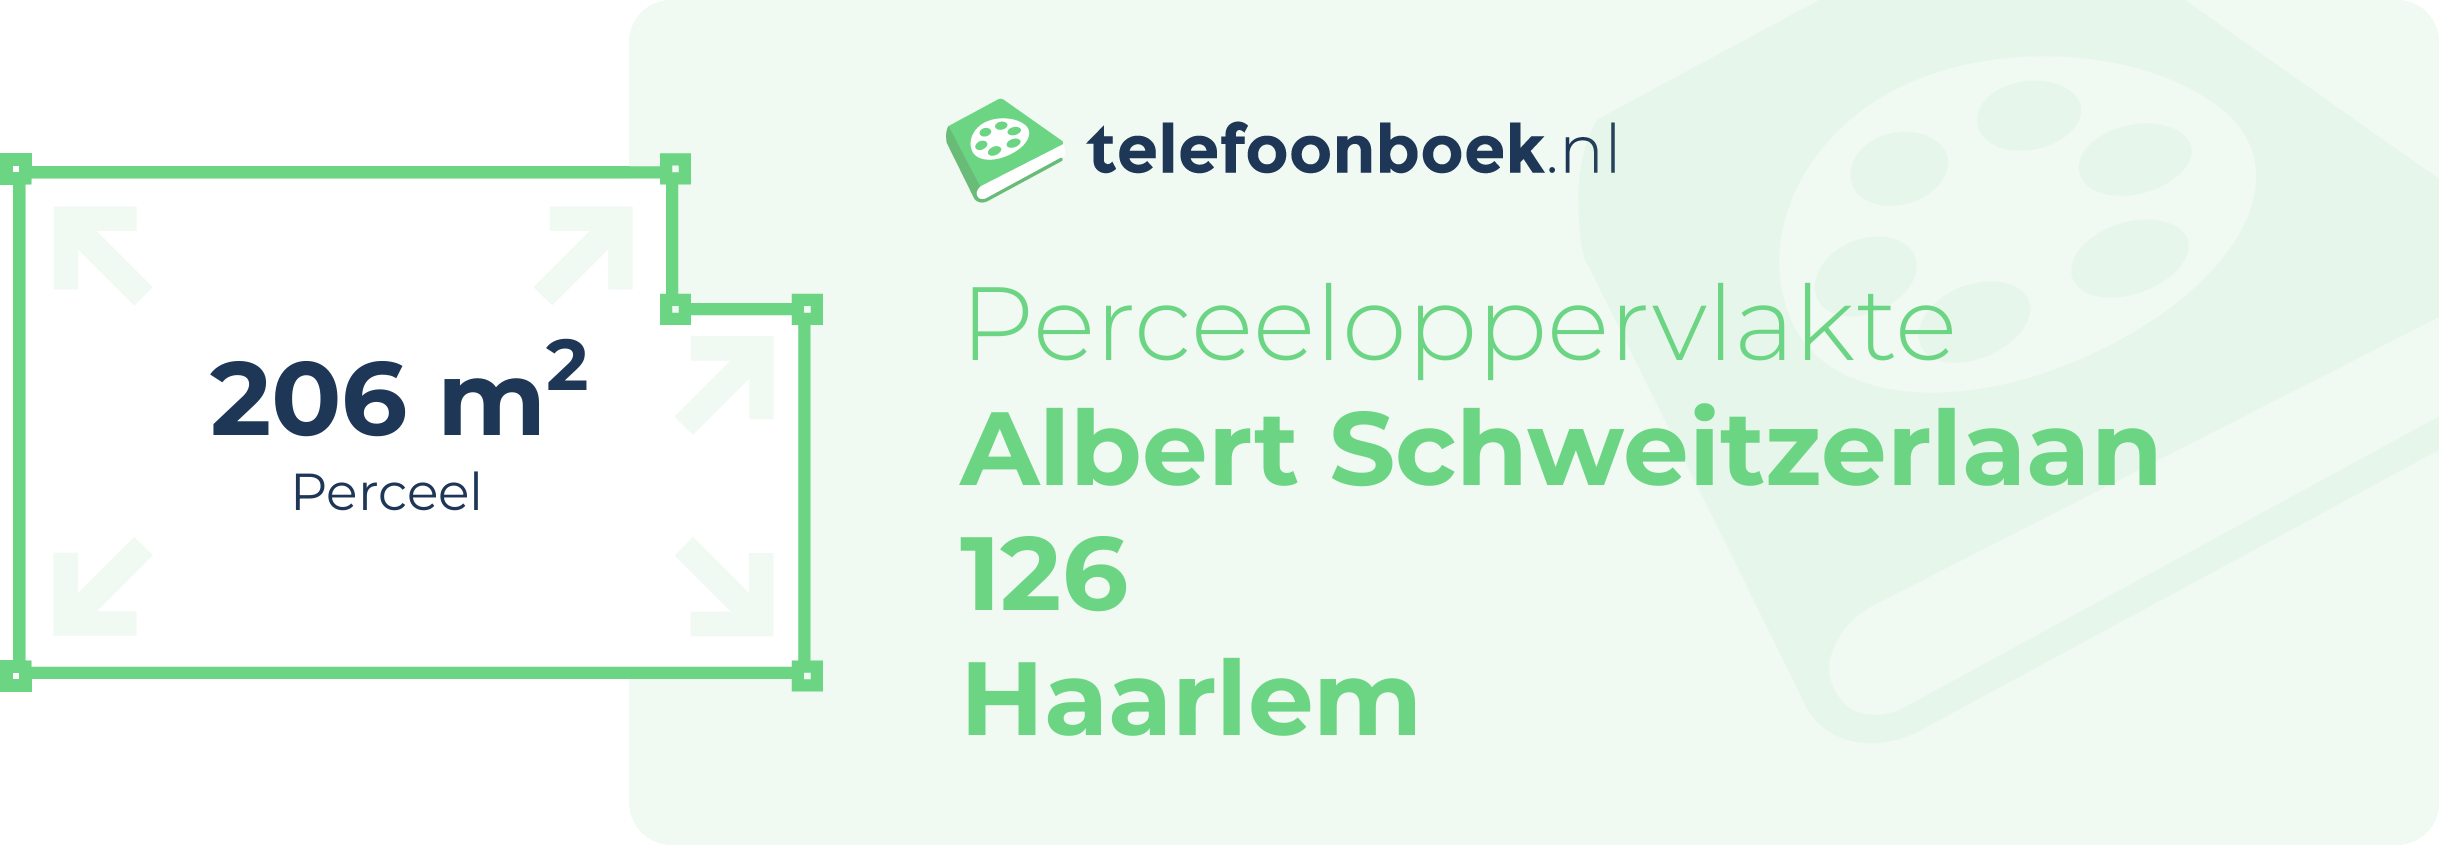 Perceeloppervlakte Albert Schweitzerlaan 126 Haarlem